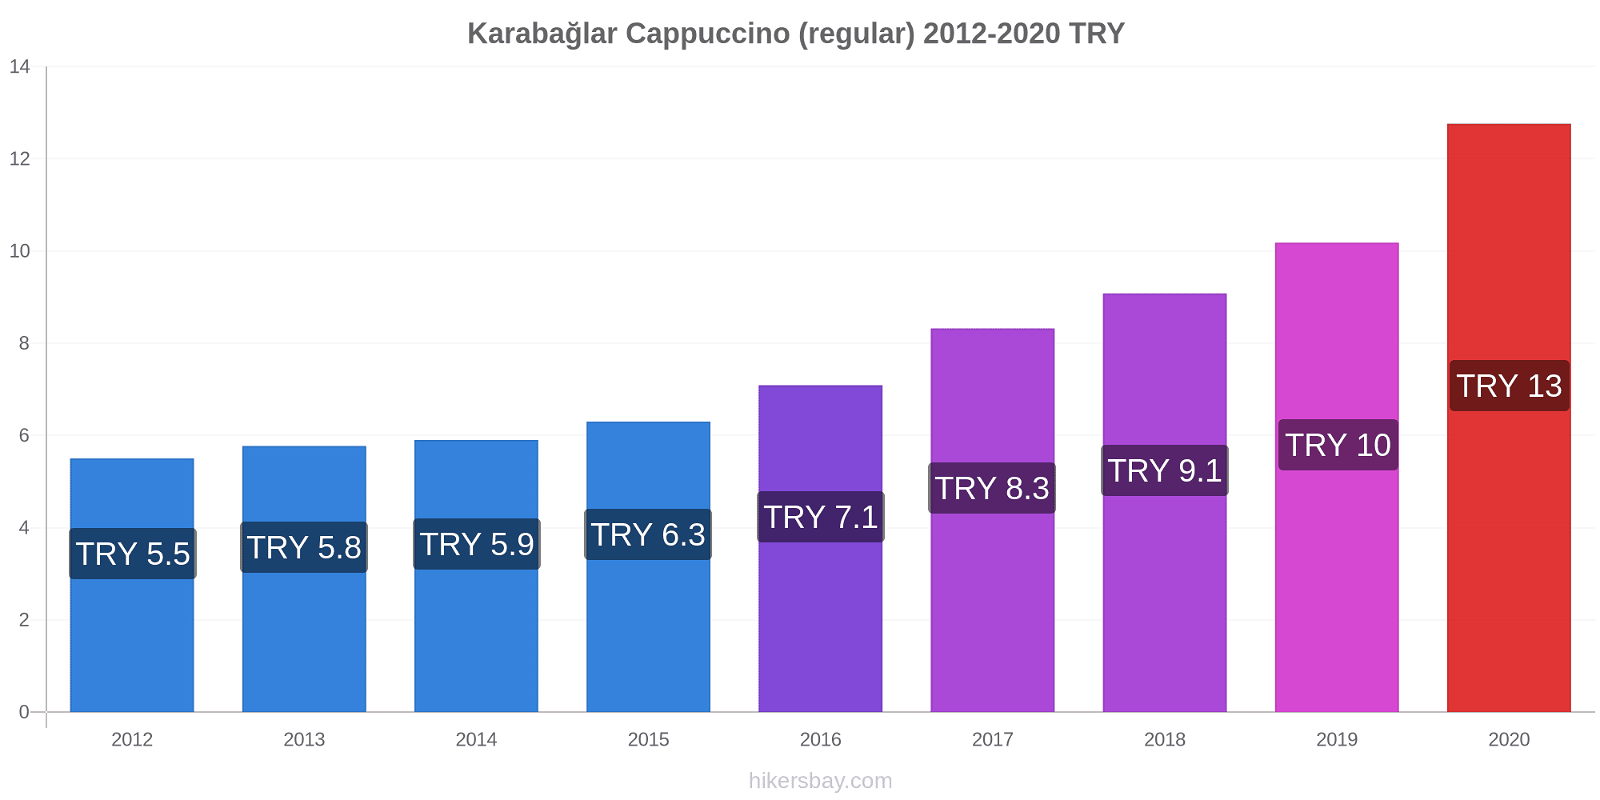 Karabağlar price changes Cappuccino (regular) hikersbay.com